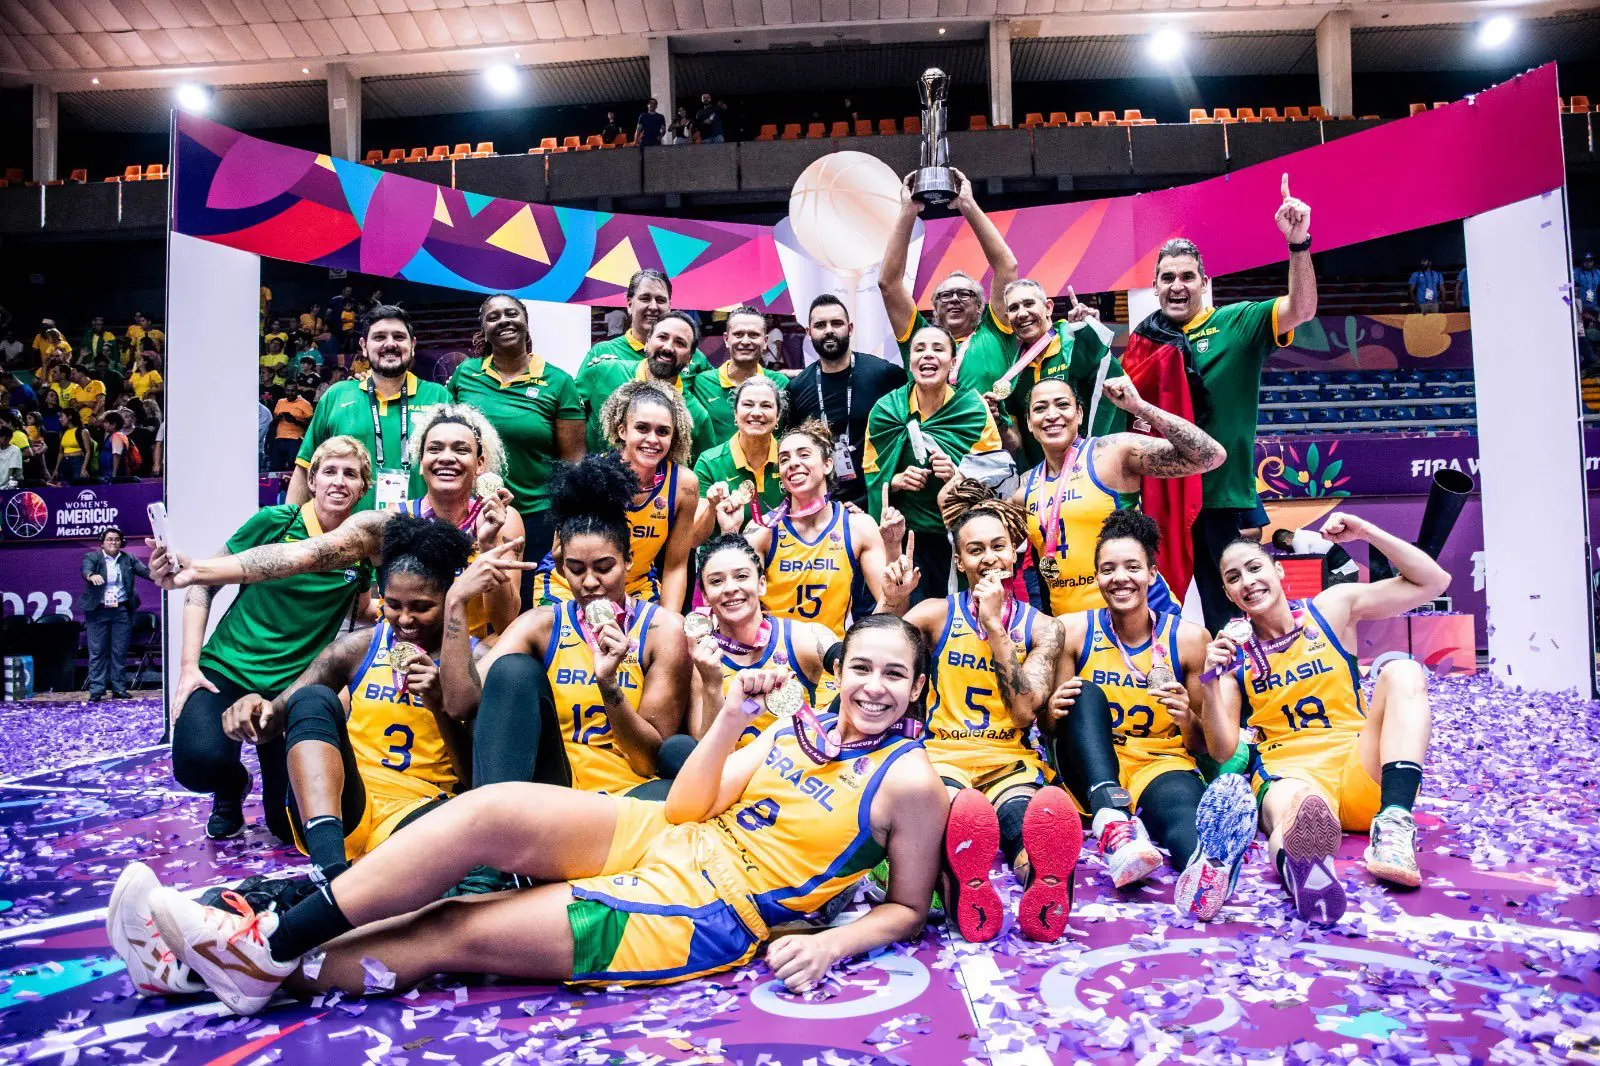 Brasil vence o México e estreia com vitória no Basquete Masculino dos Jogos  Pan Americanos